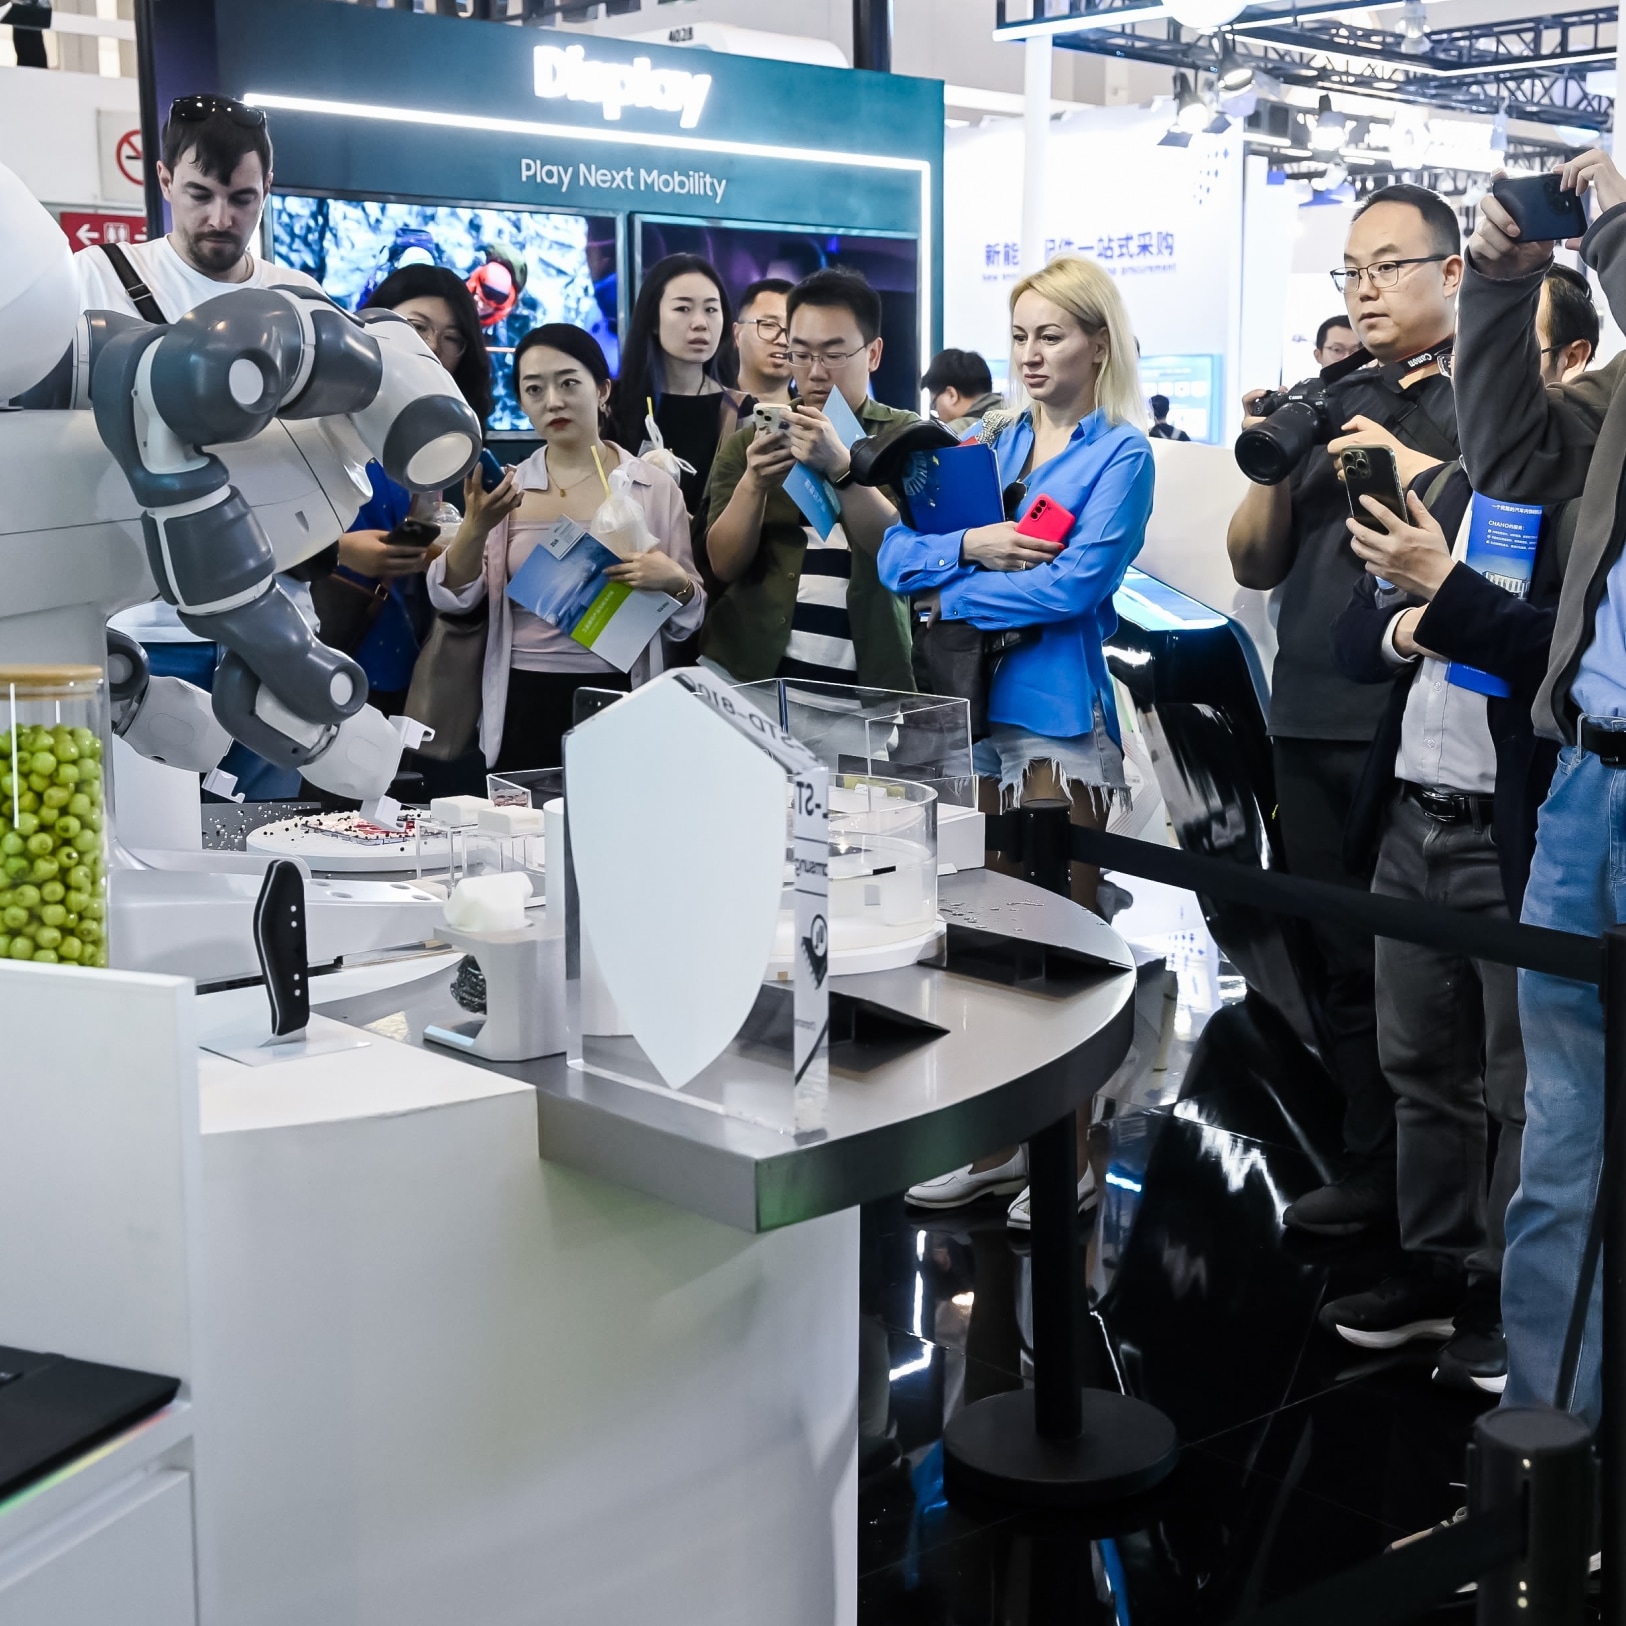 车展的参观者们观看并拍摄一个机器人执行任务，周围有信息展示和数字屏幕。